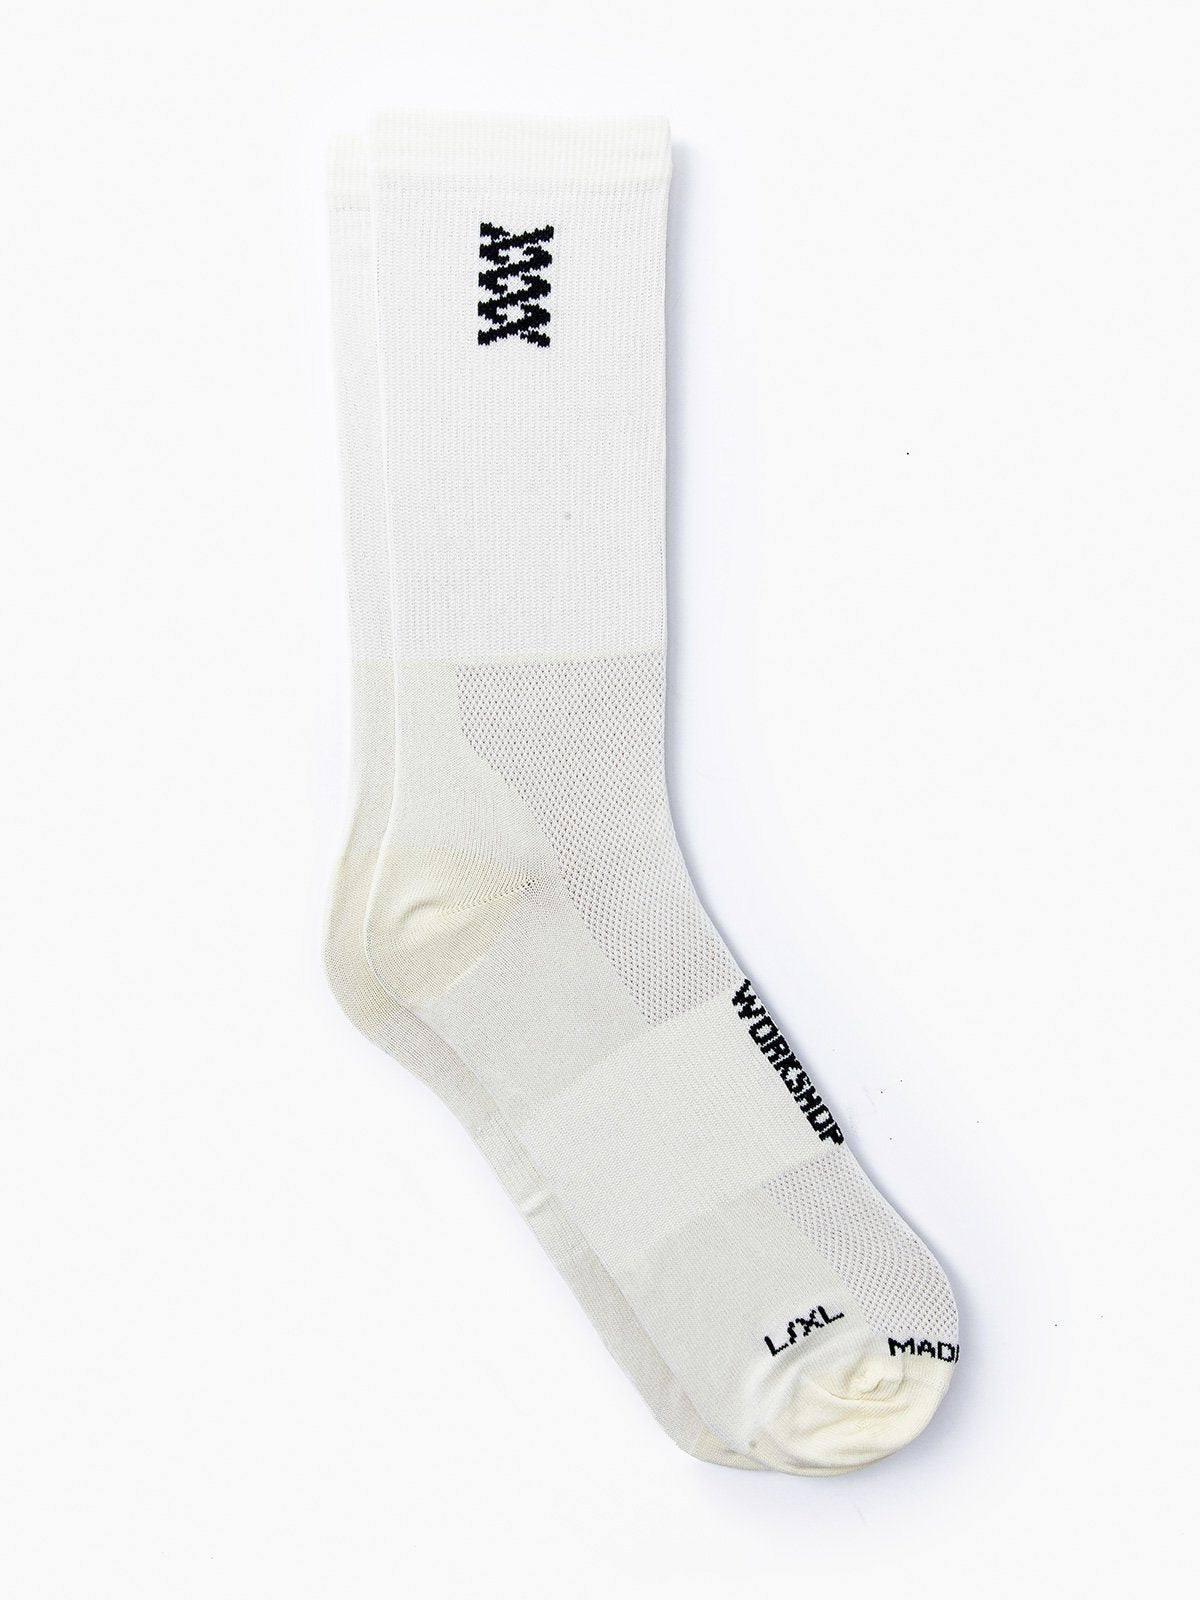 Mission Pro Socks by Mission Workshop - Bolsas resistentes a la intemperie y ropa técnica - San Francisco y Los Ángeles - Fabricados para durar - Garantizados para siempre